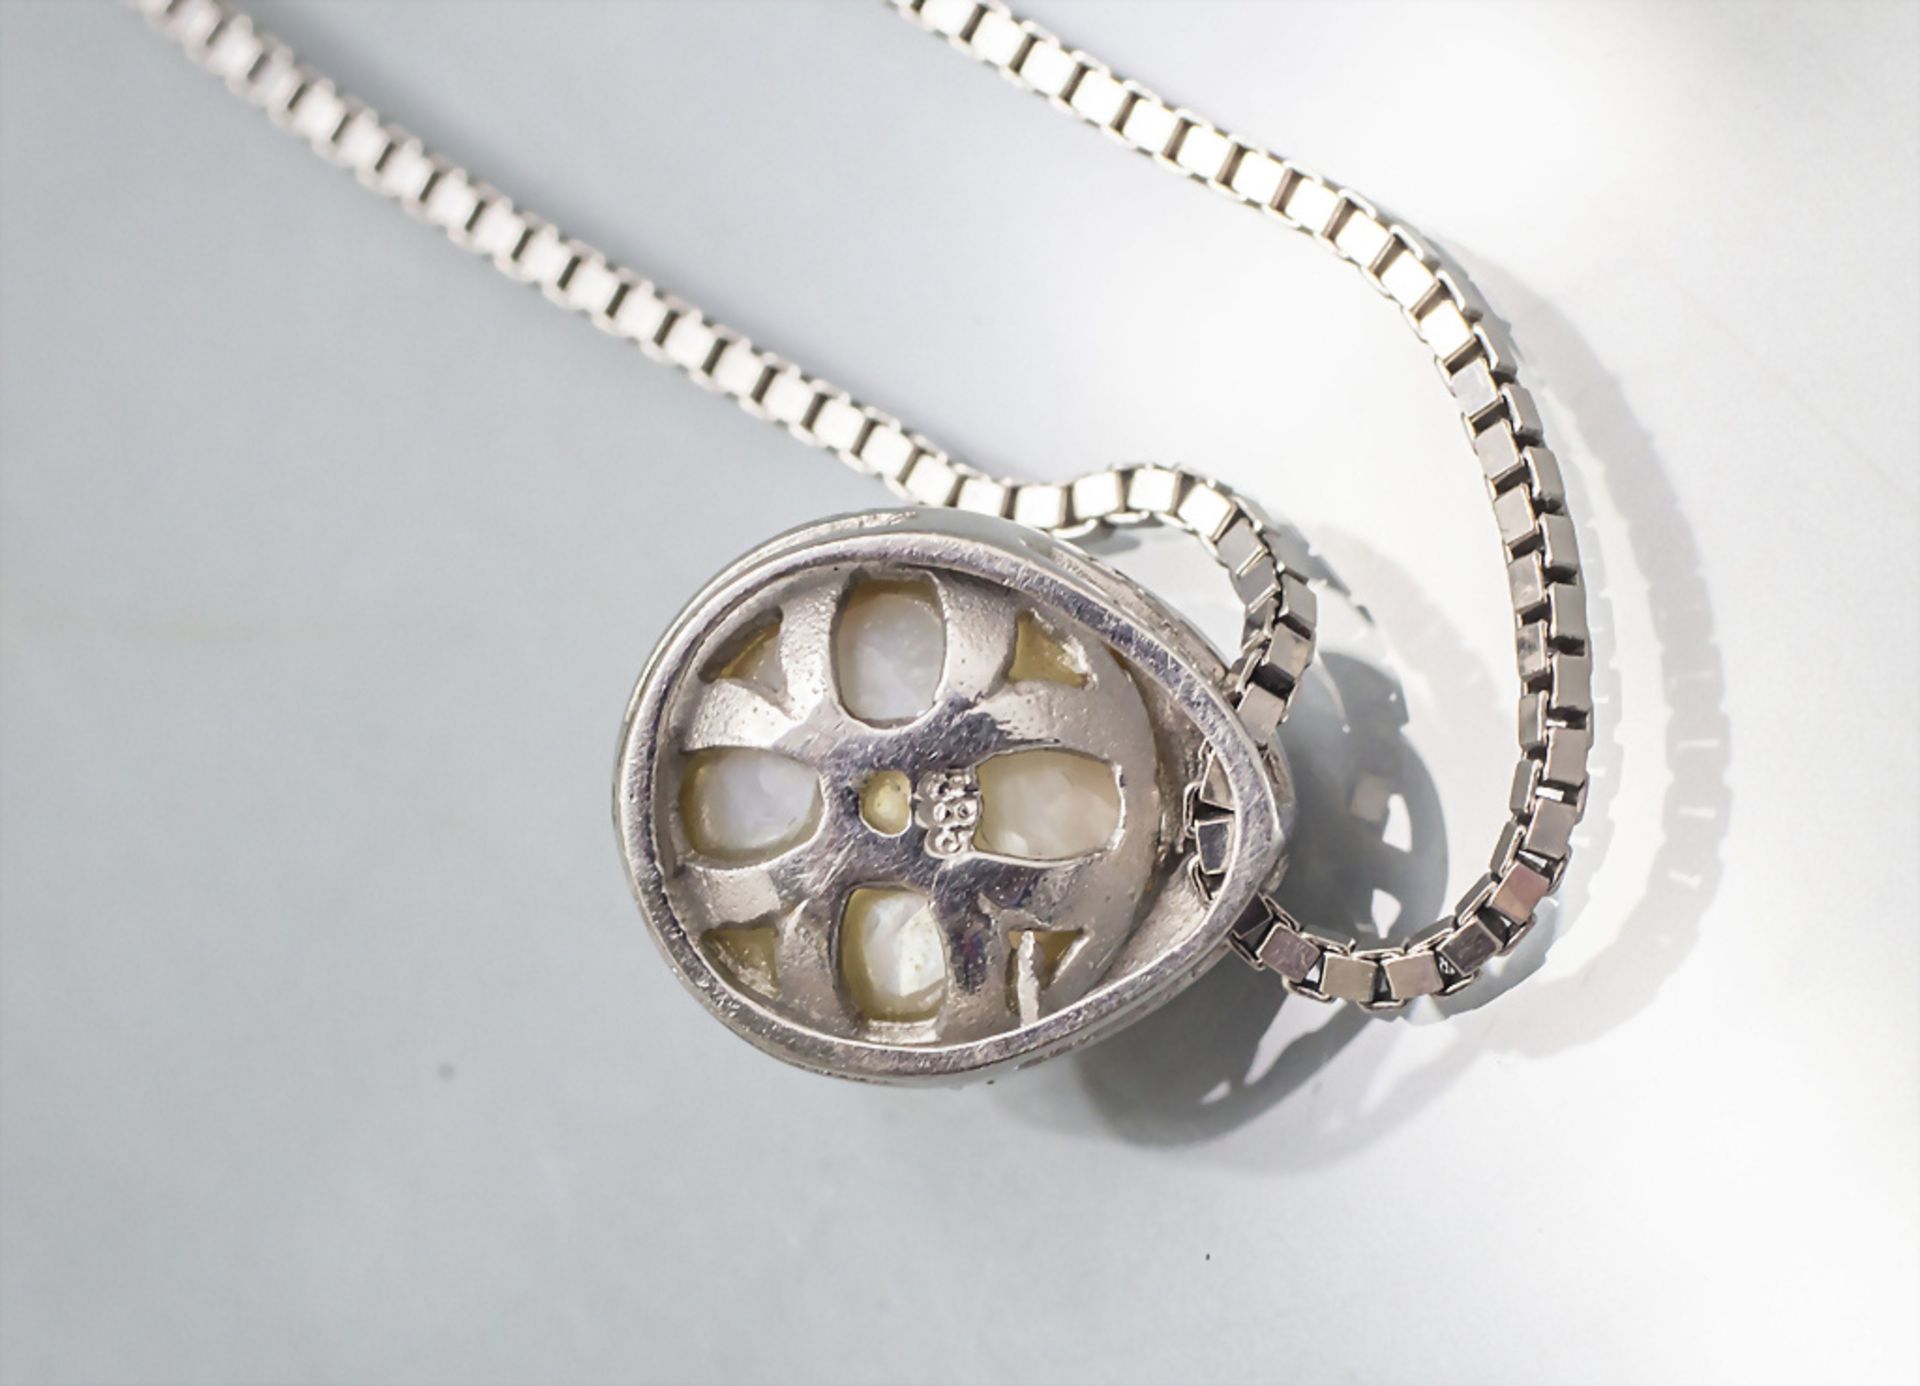 Weißgoldkette mit Perlenanhänger / A 14 ct white gold necklace with pearl pendant - Bild 3 aus 4